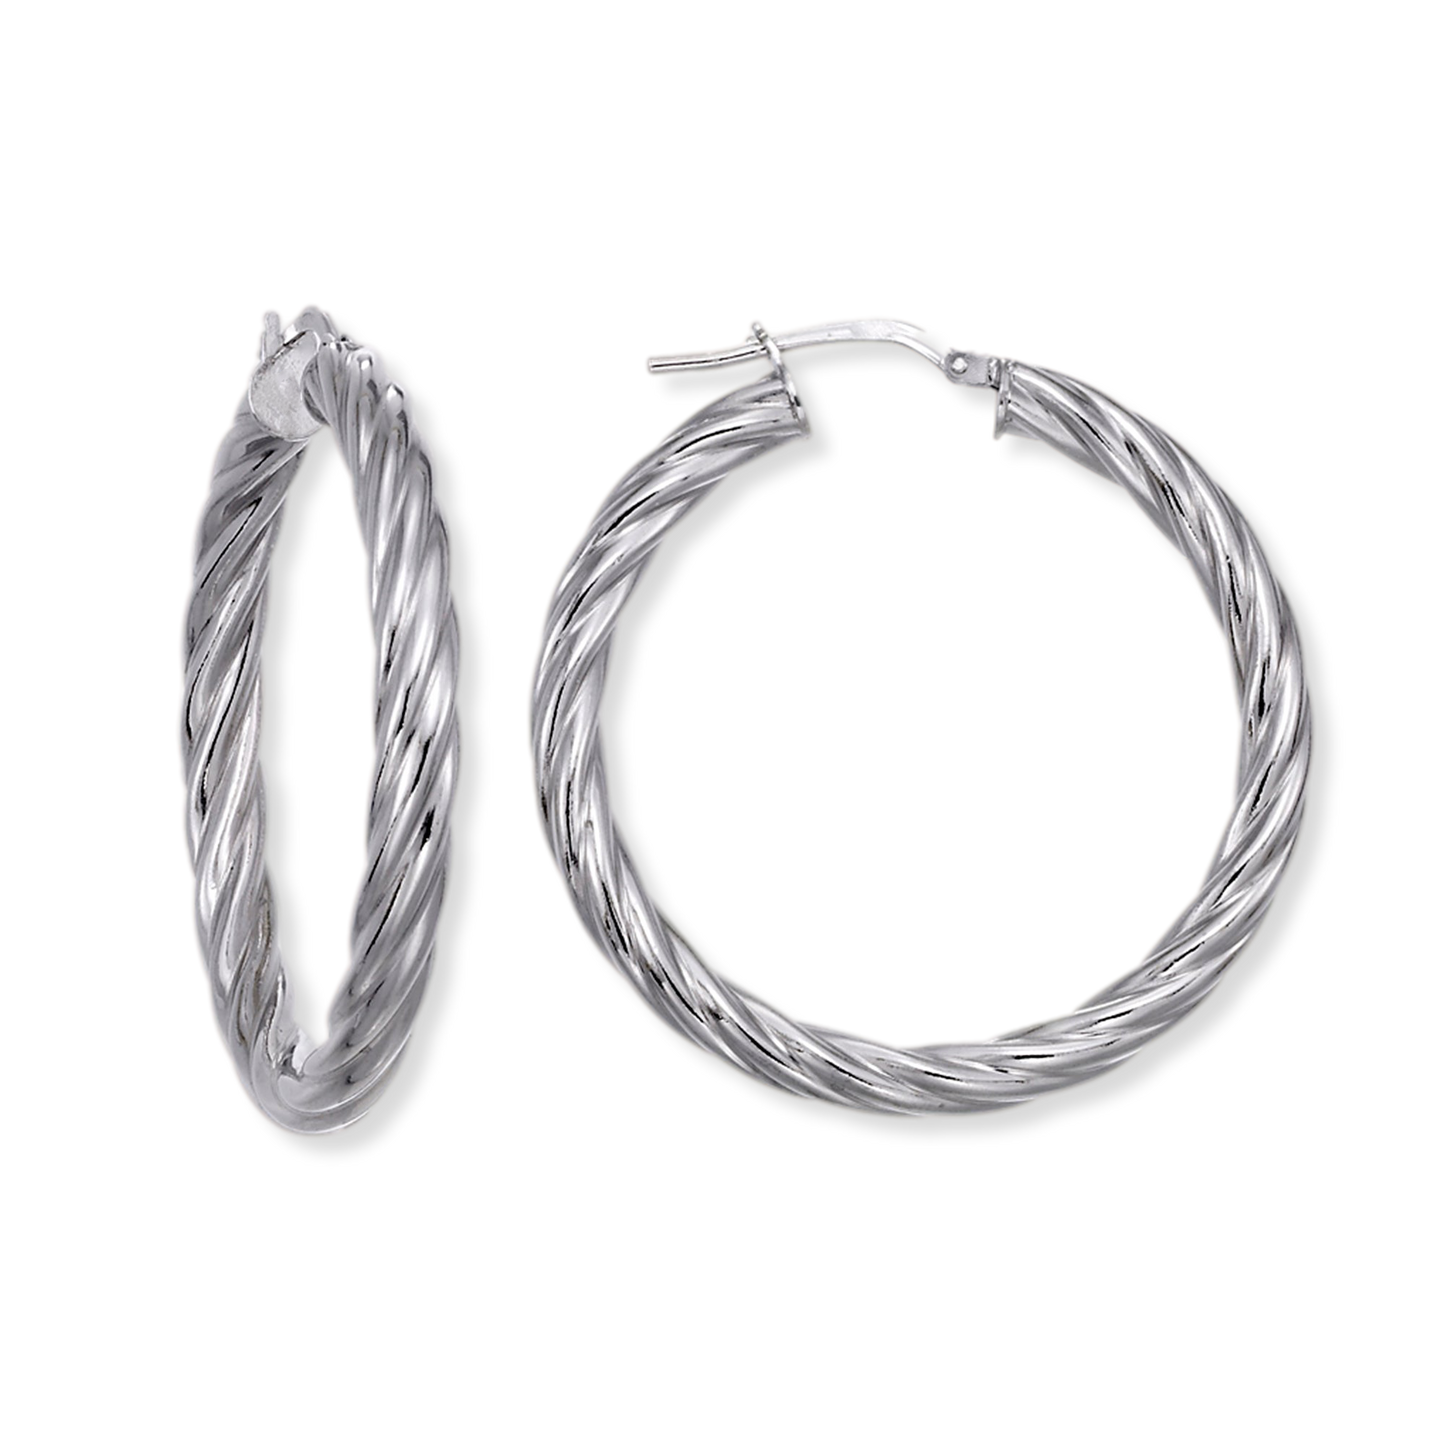 Cable Hoop Earrings